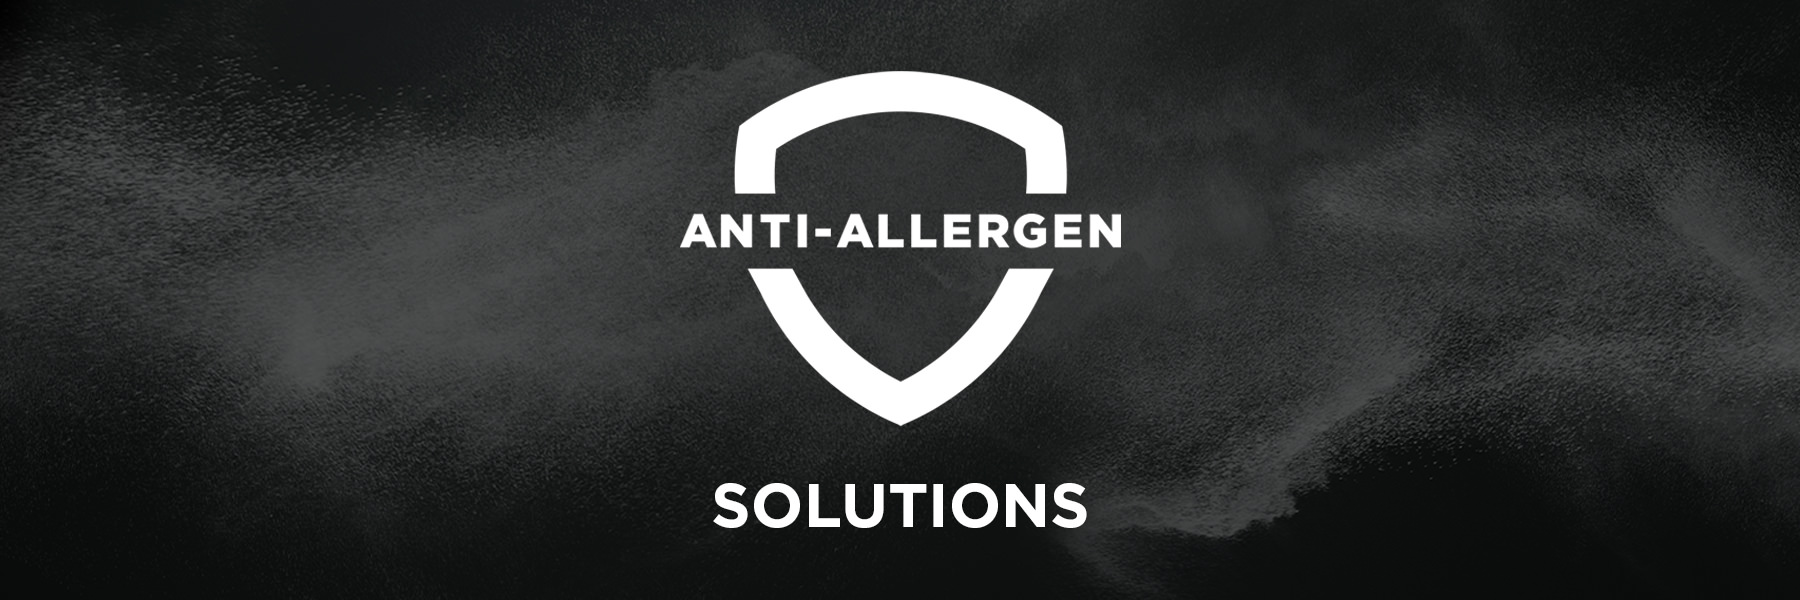 Anti-Allergen Solutions